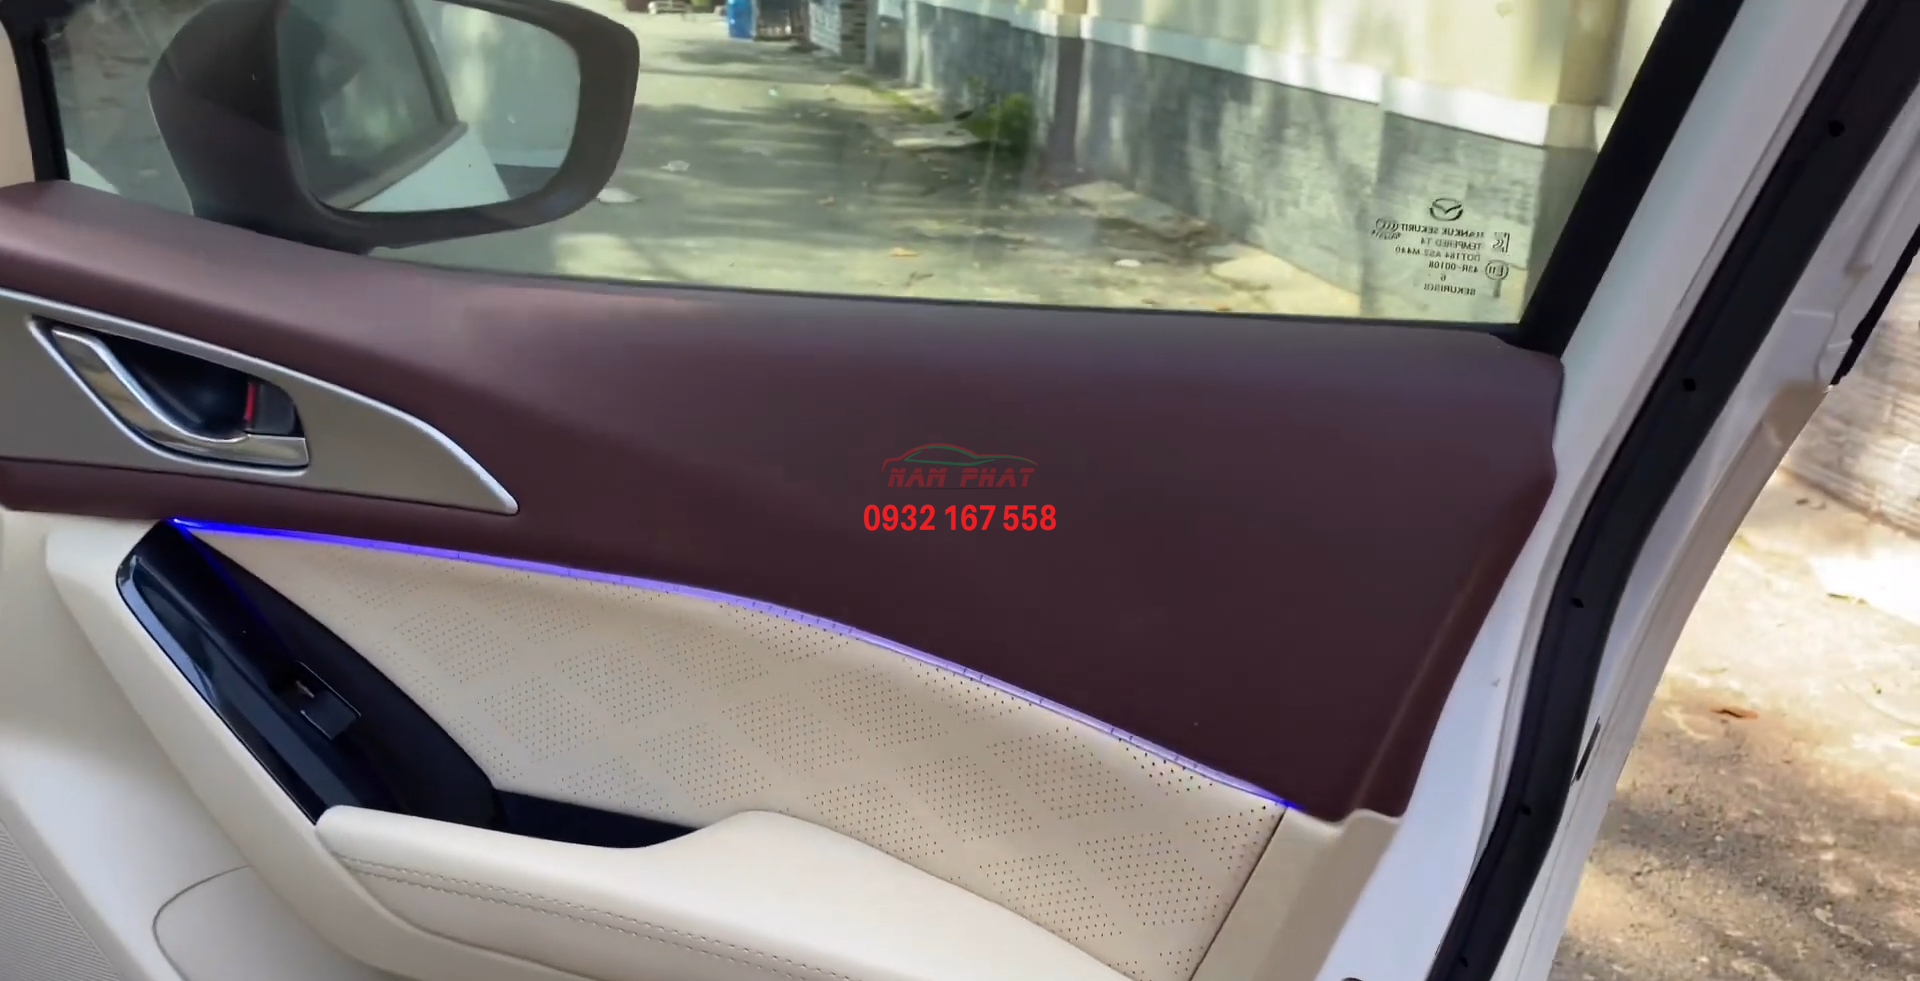 Đổi màu nội thất Mazda 3